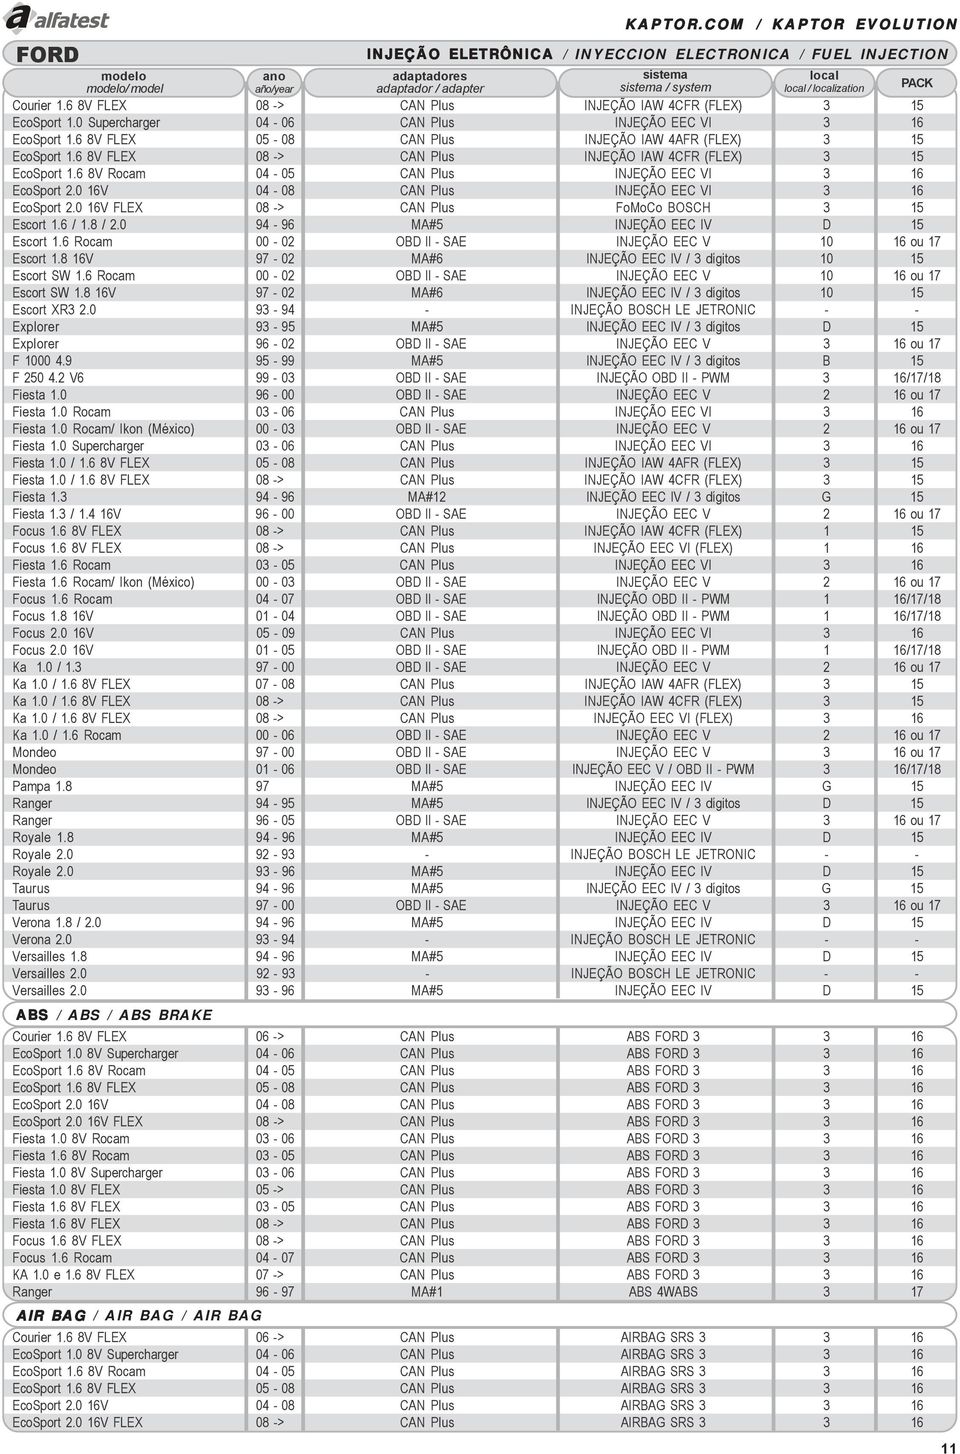 0 16V 04-08 CAN Plus INJEÇÃO EEC VI 3 16 EcoSport 2.0 16V FLEX 08 -> CAN Plus FoMoCo BOSCH 3 15 Escort 1.6 / 1.8 / 2.0 94-96 MA#5 INJEÇÃO EEC IV D 15 Escort 1.